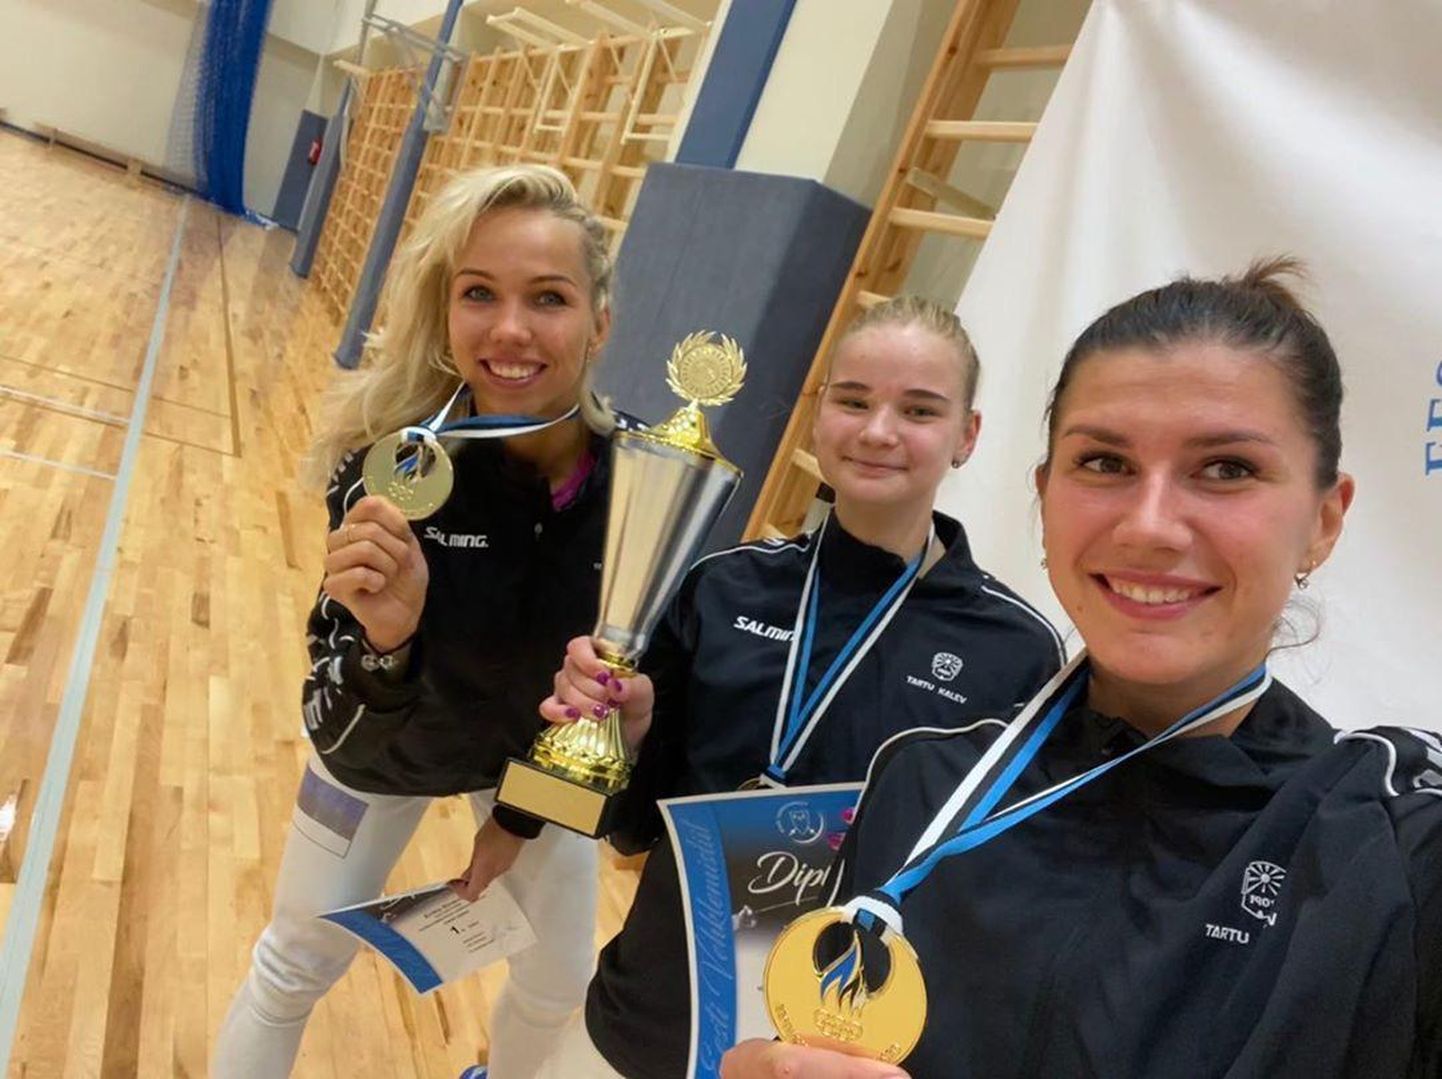 Tartu Kalevi naiskond koosseisus (vasakult) Erika Kirpu, Susanne Lannes ja Julia Beljajeva saavutas Eesti meistrivõistlustel esikoha.
 